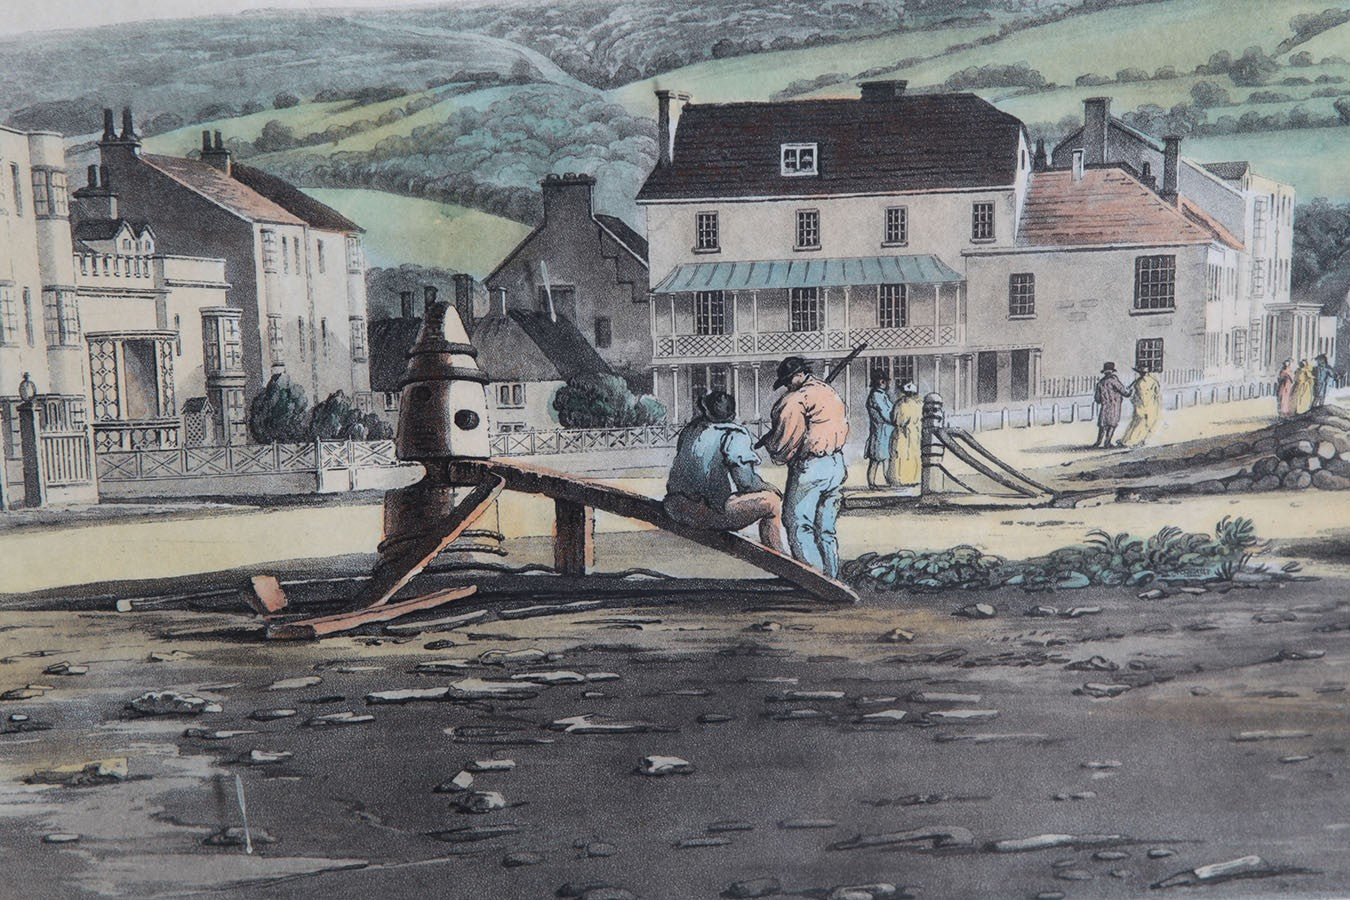 Antica stampa colori inglese del 1900 raffigurante cittadina sul mare